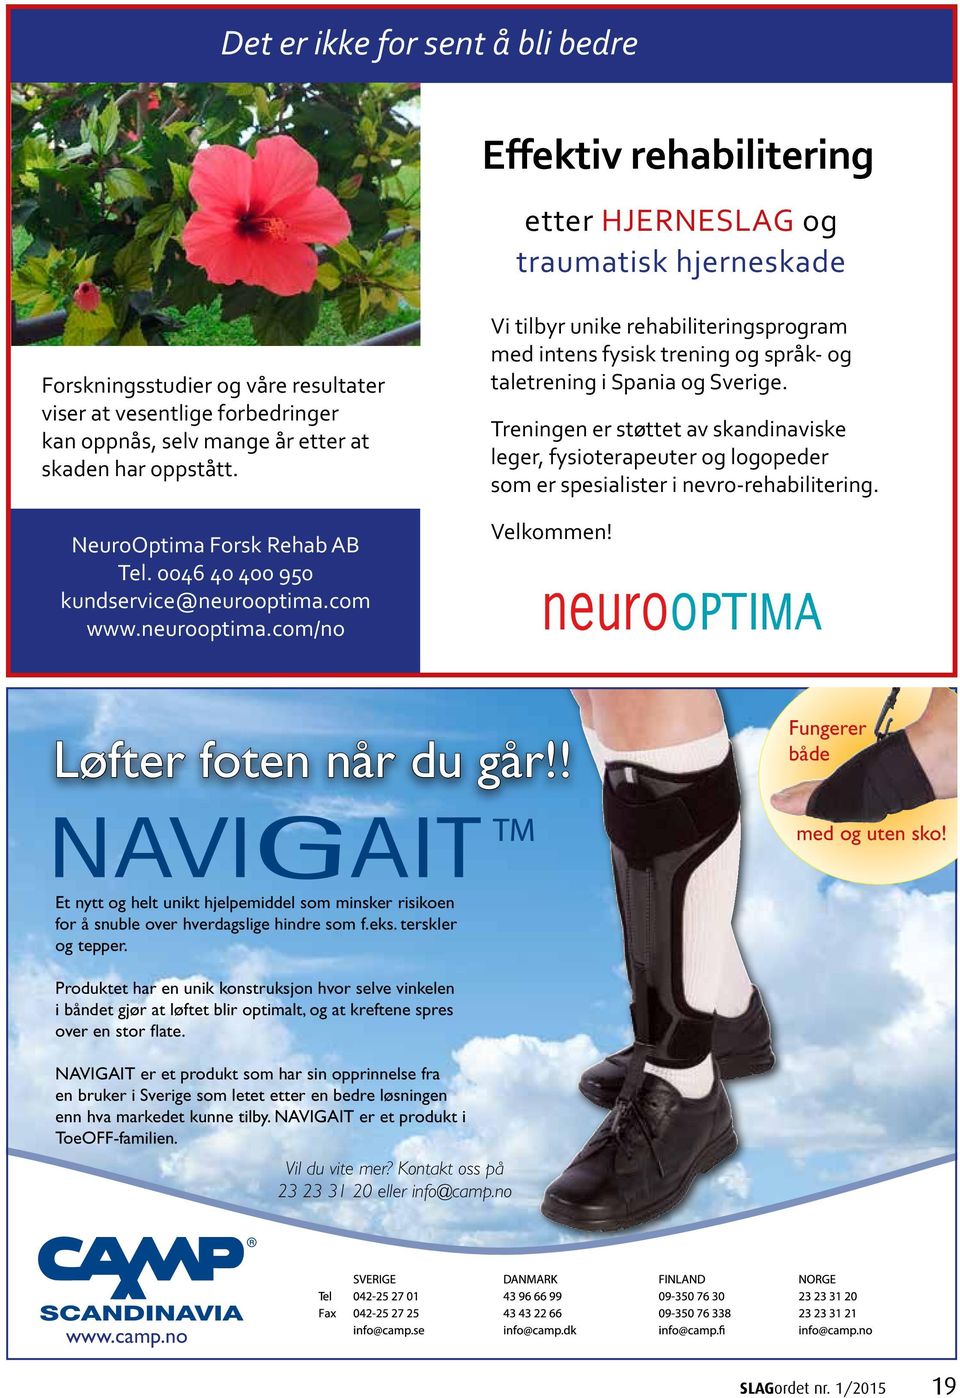 com www.neurooptima.com/no Vi tilbyr unike rehabiliteringsprogram med intens fysisk trening og språk- og taletrening i Spania og Sverige.